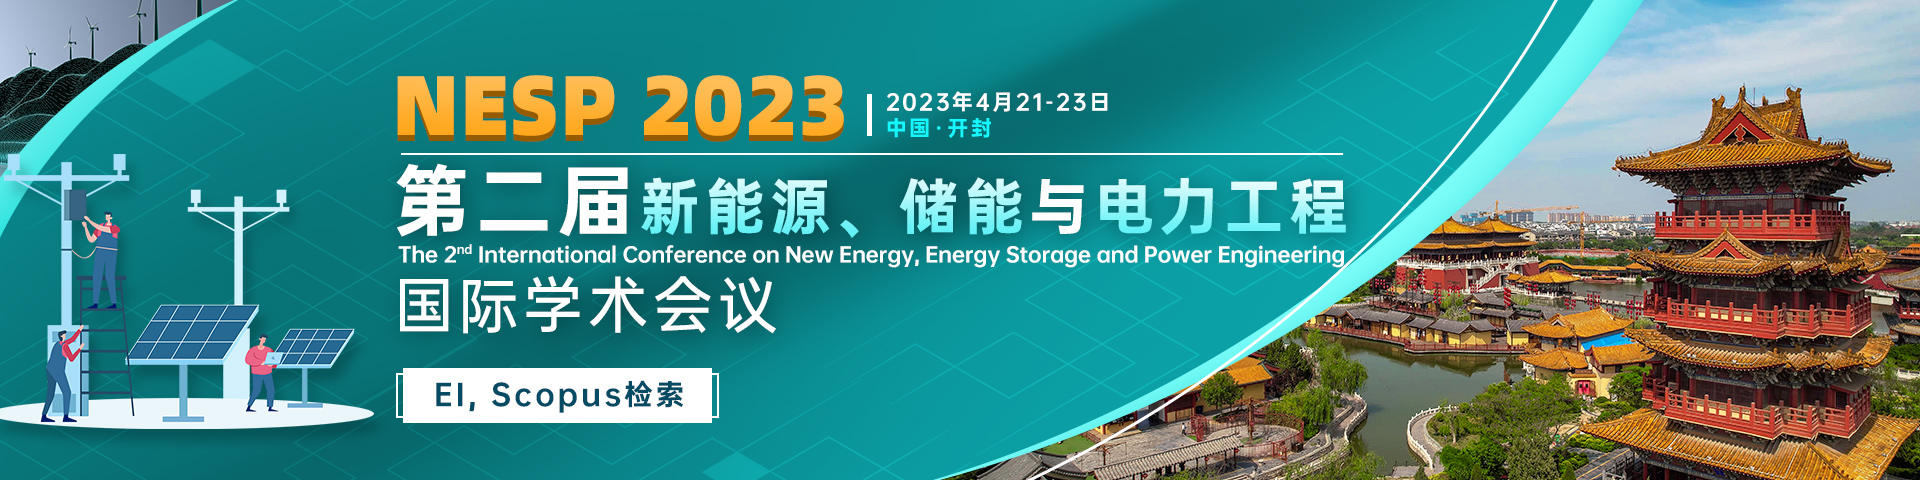 第二届新能源、储能与电力工程国际学术会议（NESP 2023）